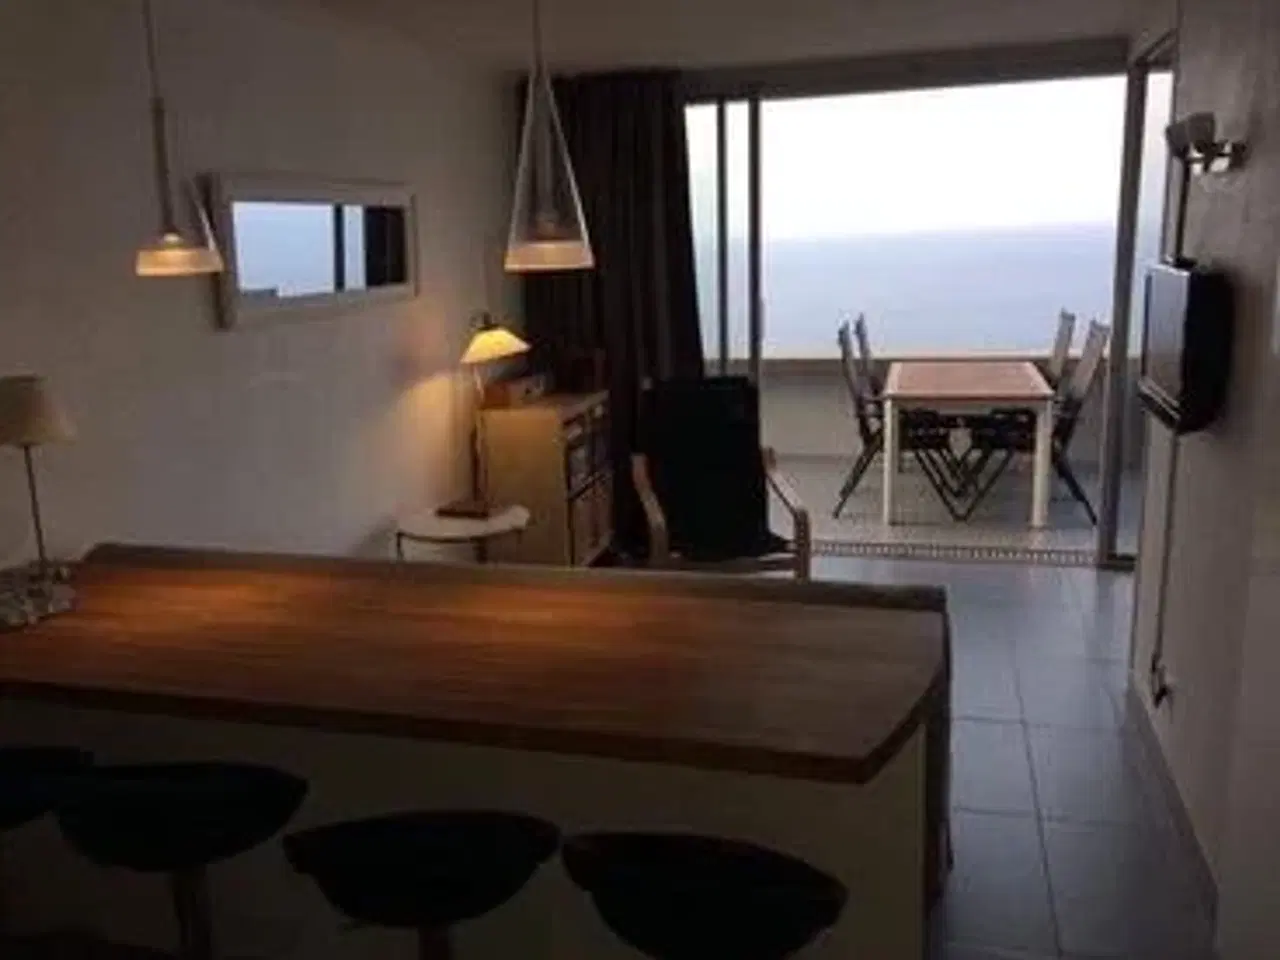 Billede 4 - Super ferielejlighed for 4 personer beliggende i Cap d Ail mellem Nice og Monaco. Stor balkon med markise. Højt og ugenert beliggende i komplekset med 180 gr panoramaudsigt over Middelhavet. Soveværelse med skydedør til stuen, der har sovesofa til 2.